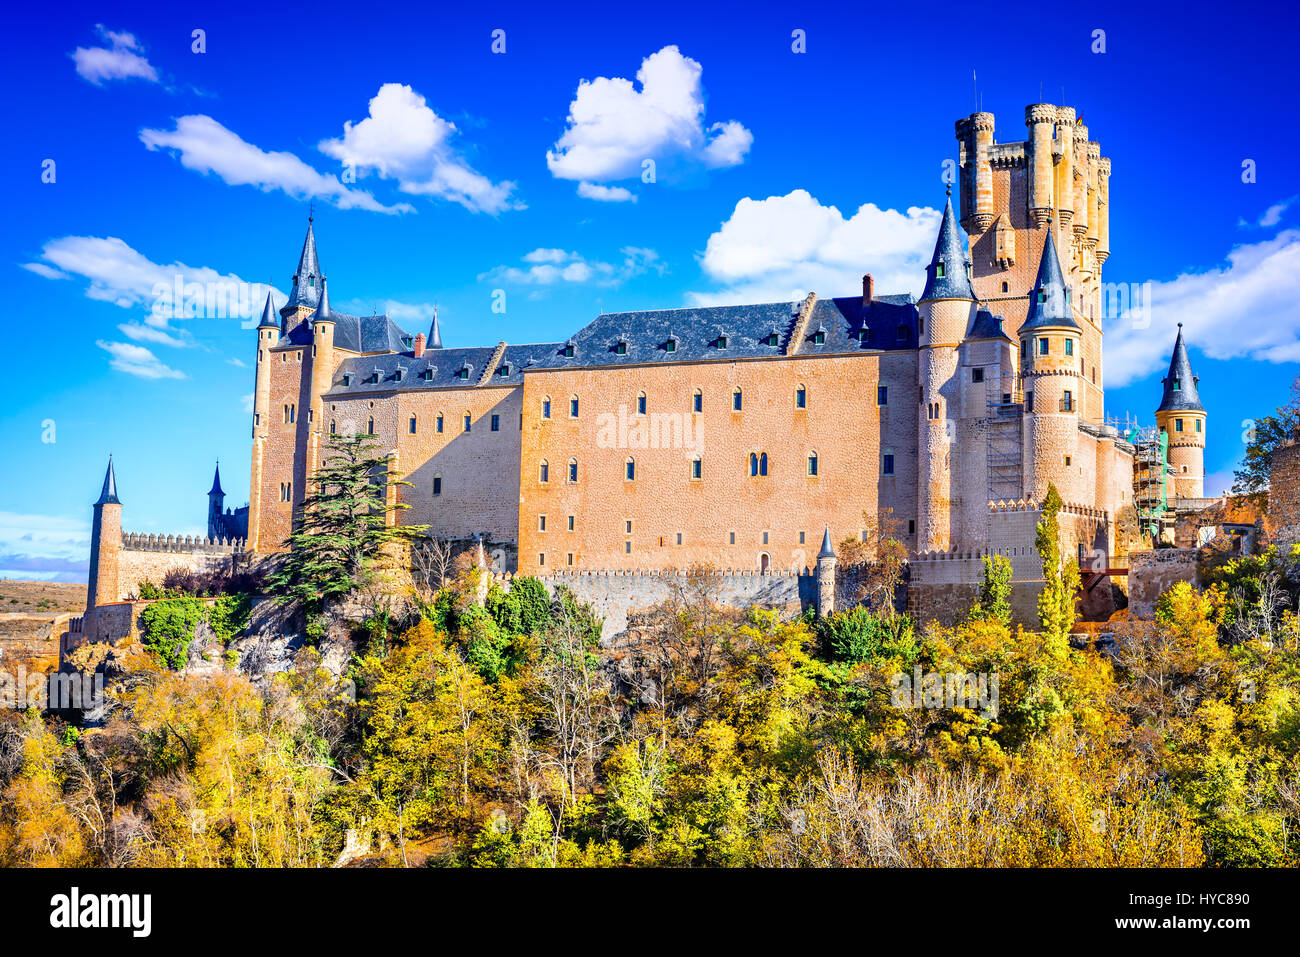 Segovia, Spanien. Die berühmten Alcazar von Segovia, steigen Sie auf einen steinigen Felsen, gebaut im Jahre 1120.  Castilla y Leon. Stockfoto